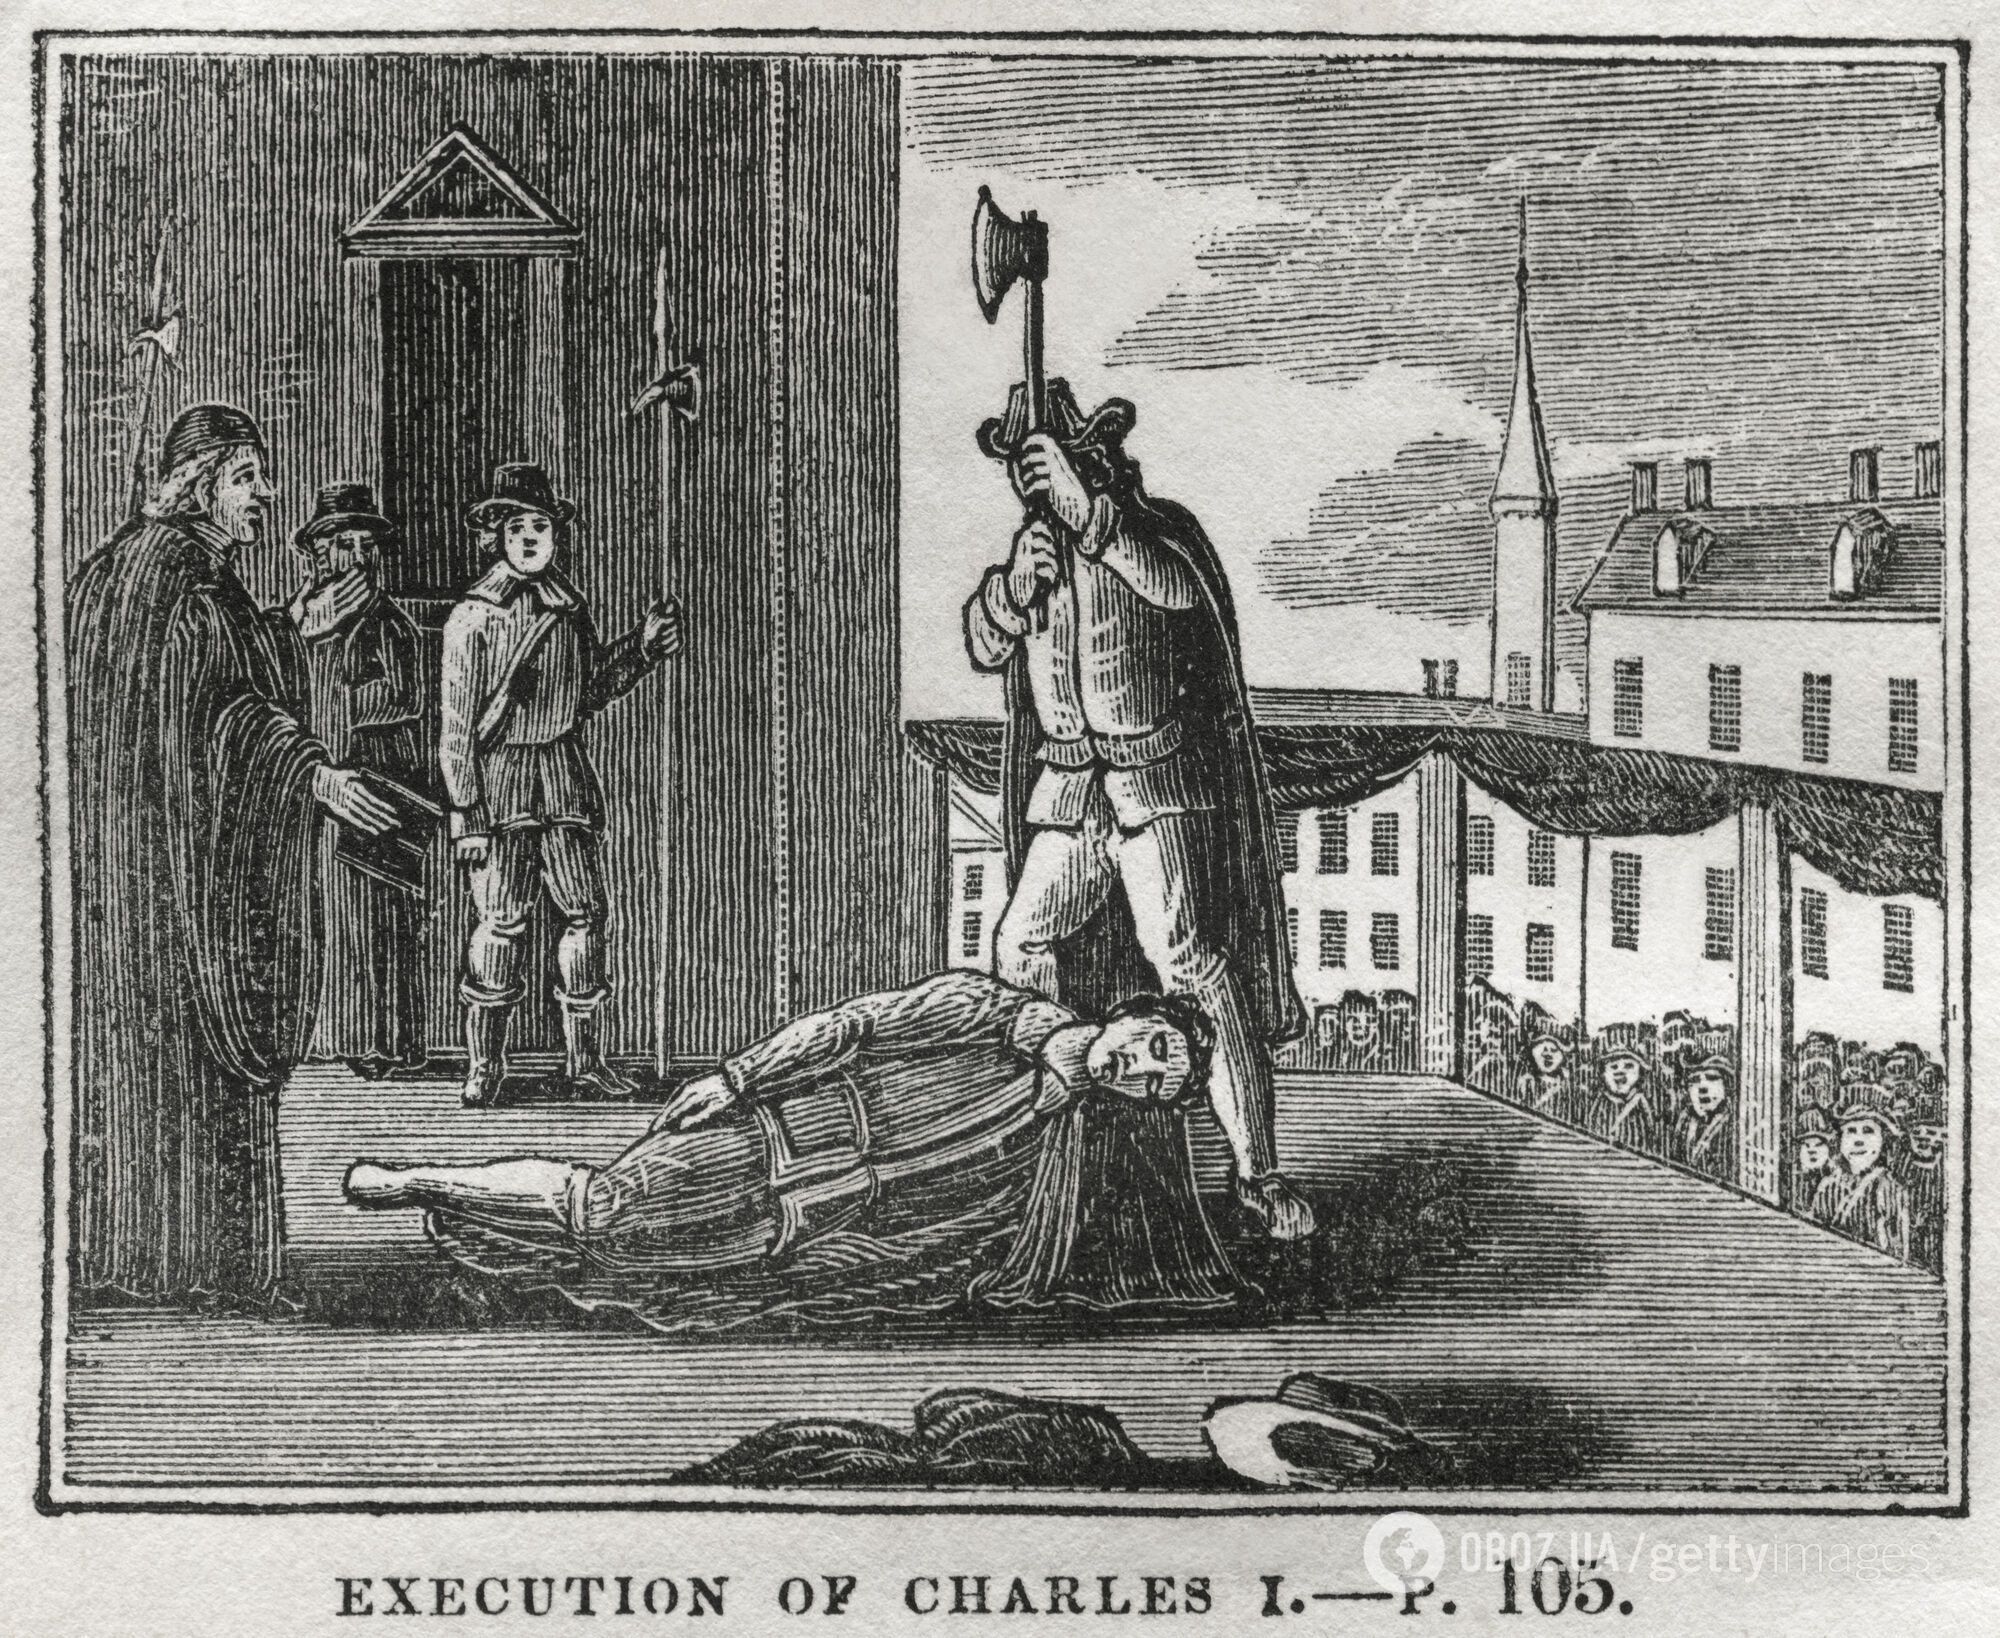 Первого приговорили к смертной казни, отрубив голову, а второй отомстил за отца: что известно о предшественниках-тезках Чарльза III